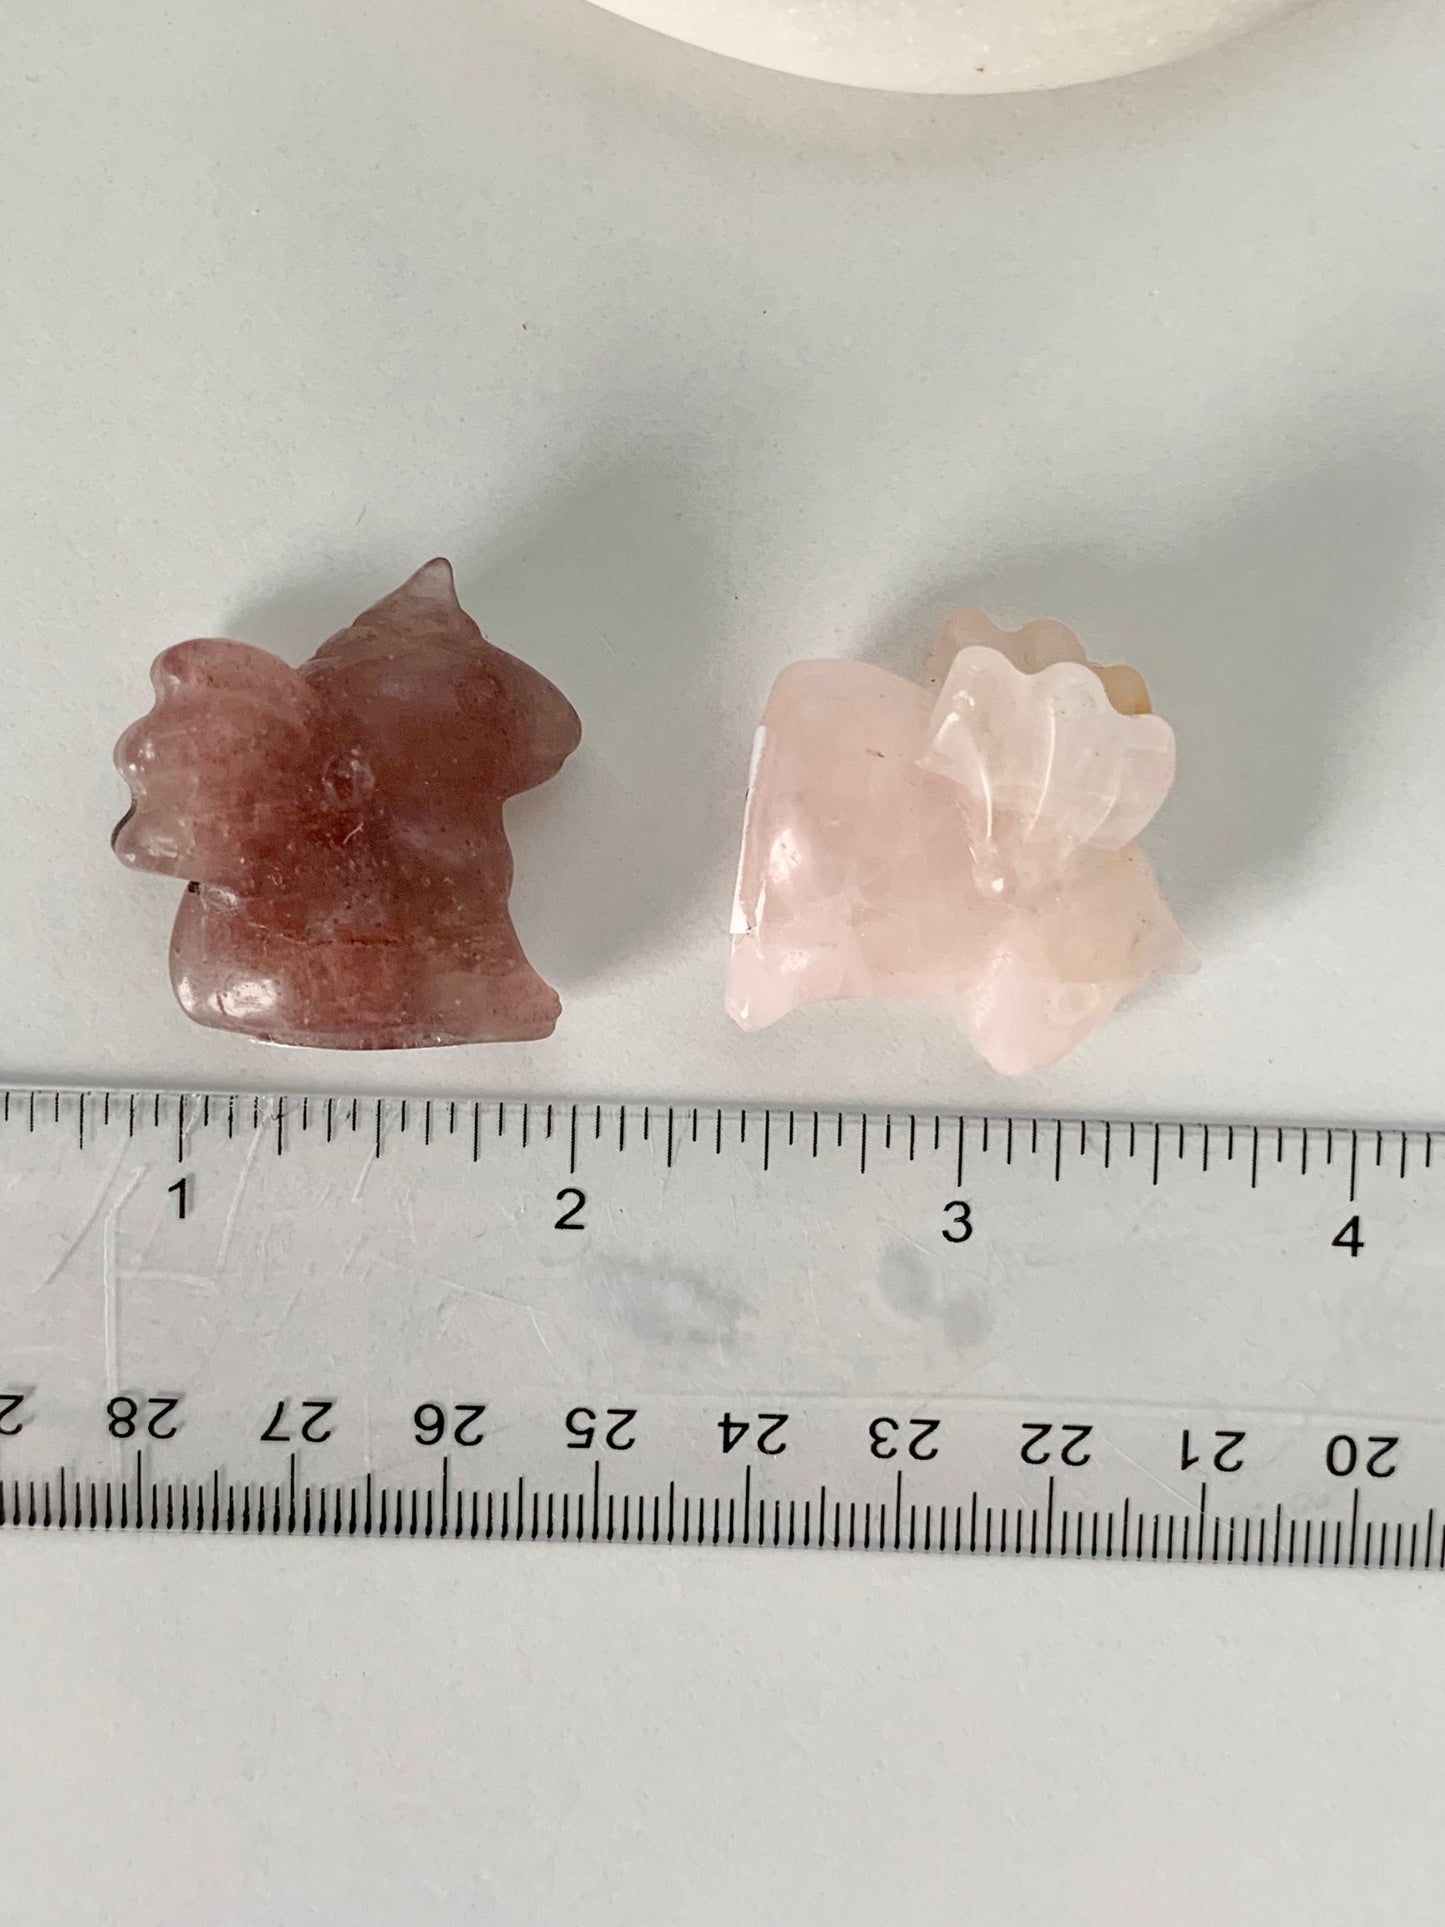 Mini Unicorn, rose quartz